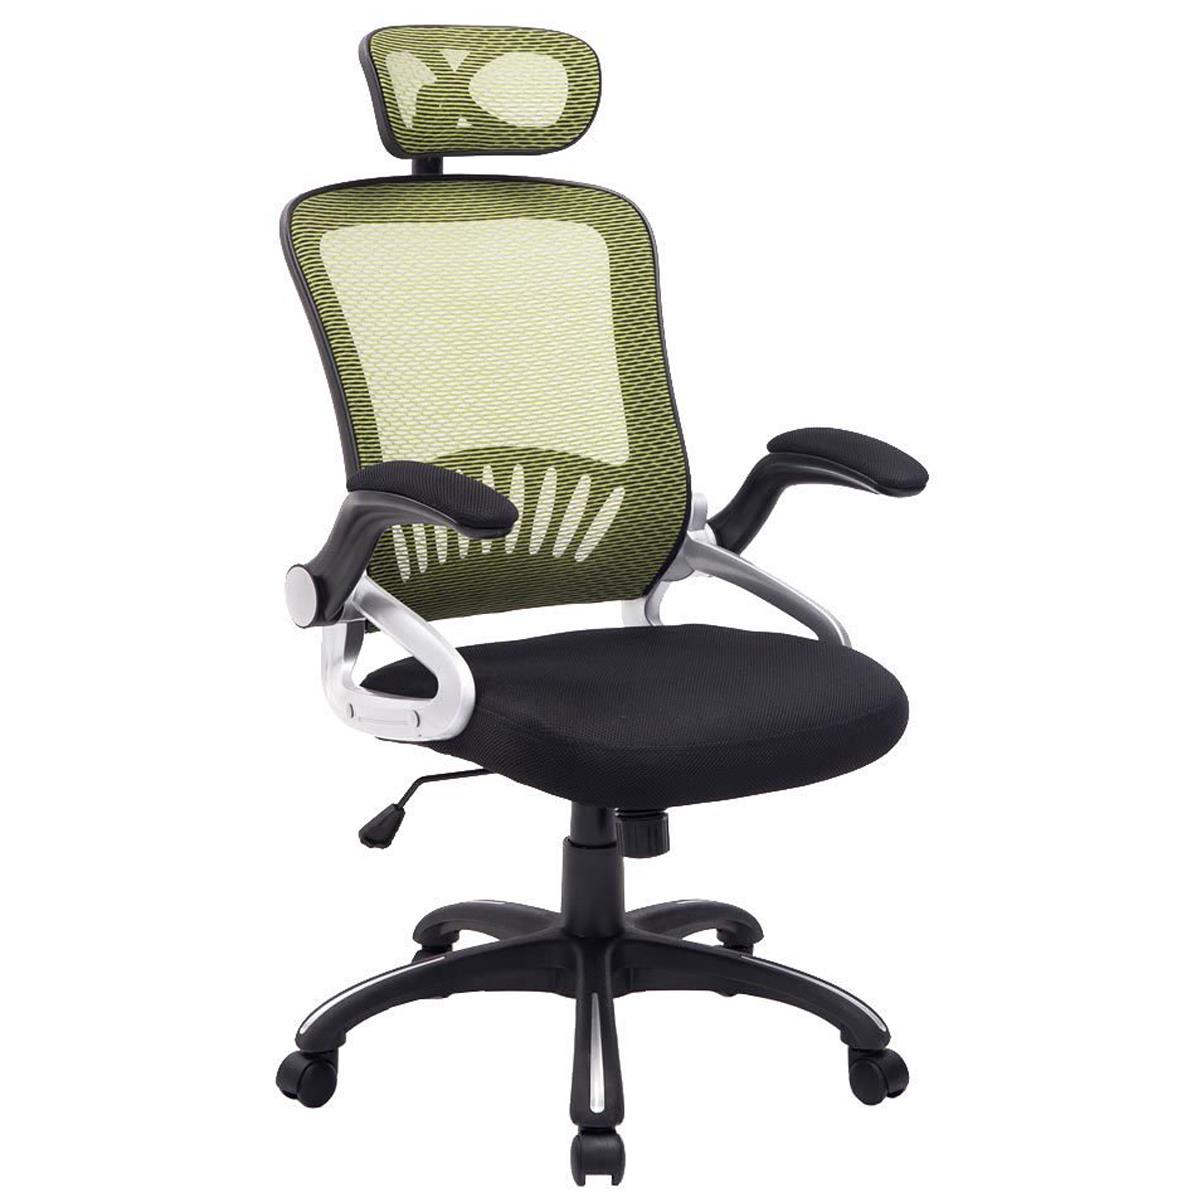 Cadeira Ergonômica SAMANA, Suporte Lombar, Cabeceira Regulável em Malha Transpirável, cor Verde/Preto